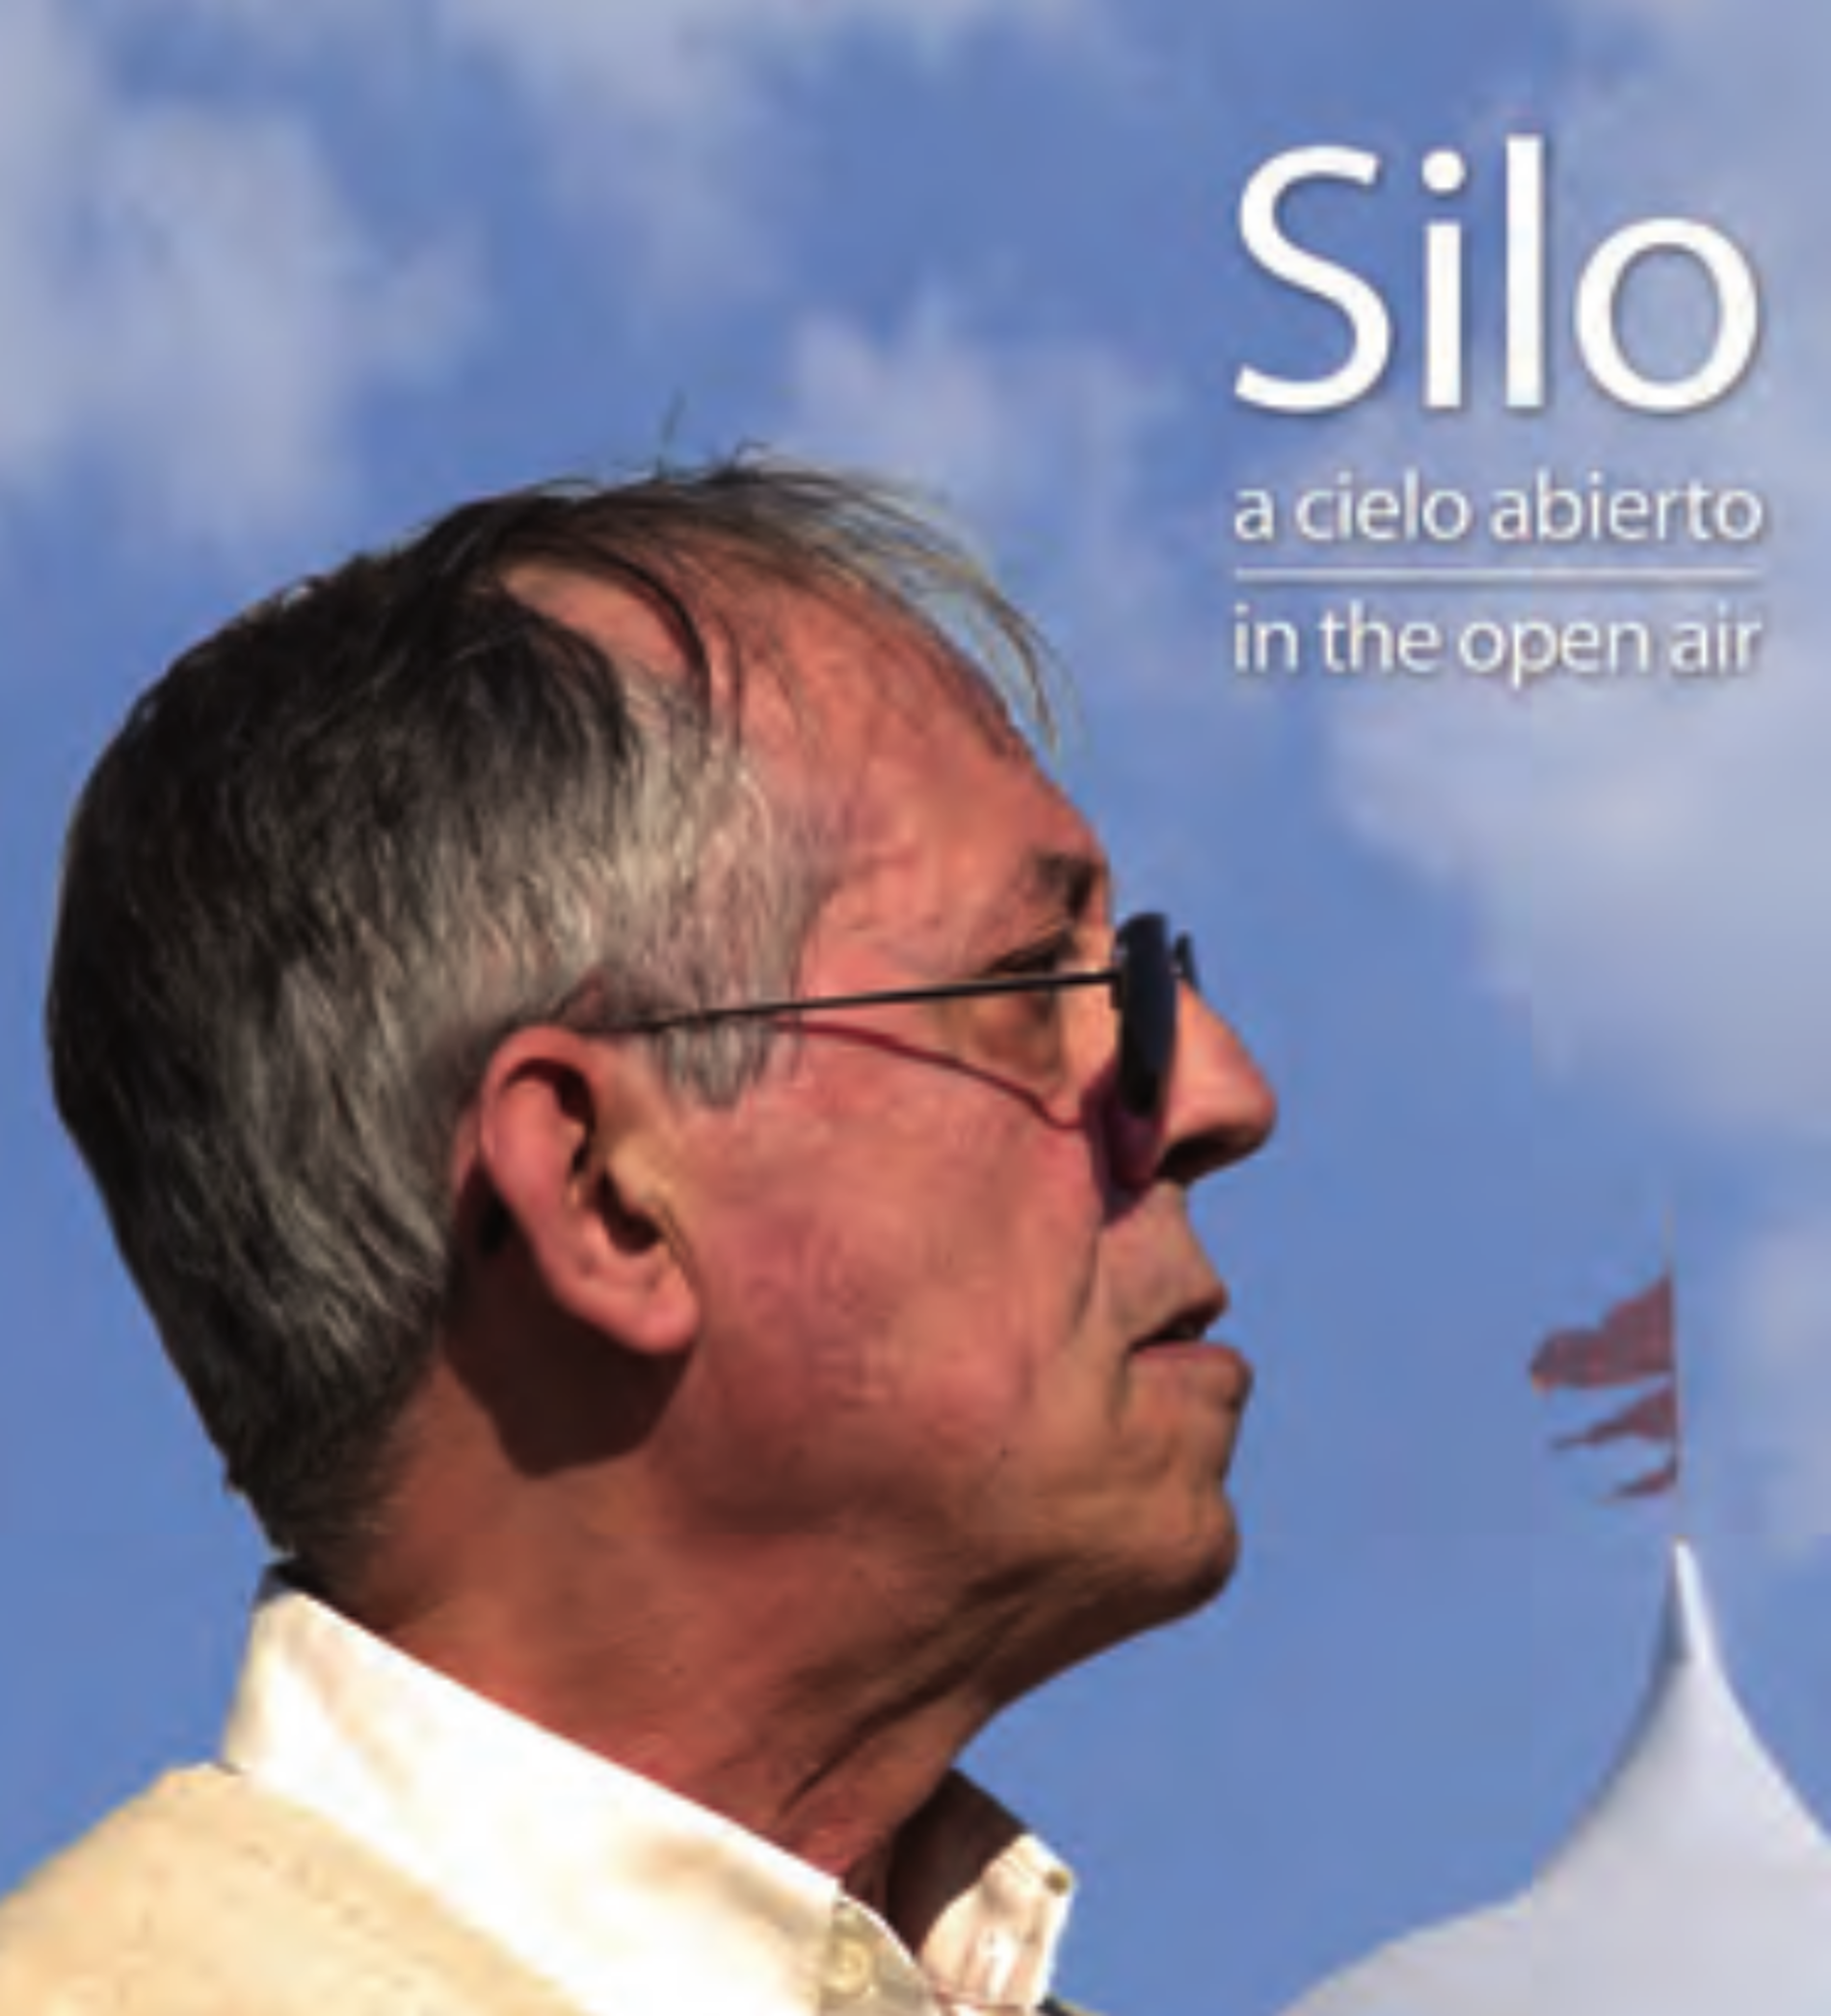 Libro impreso: Silo, a cielo abierto (español – inglés)